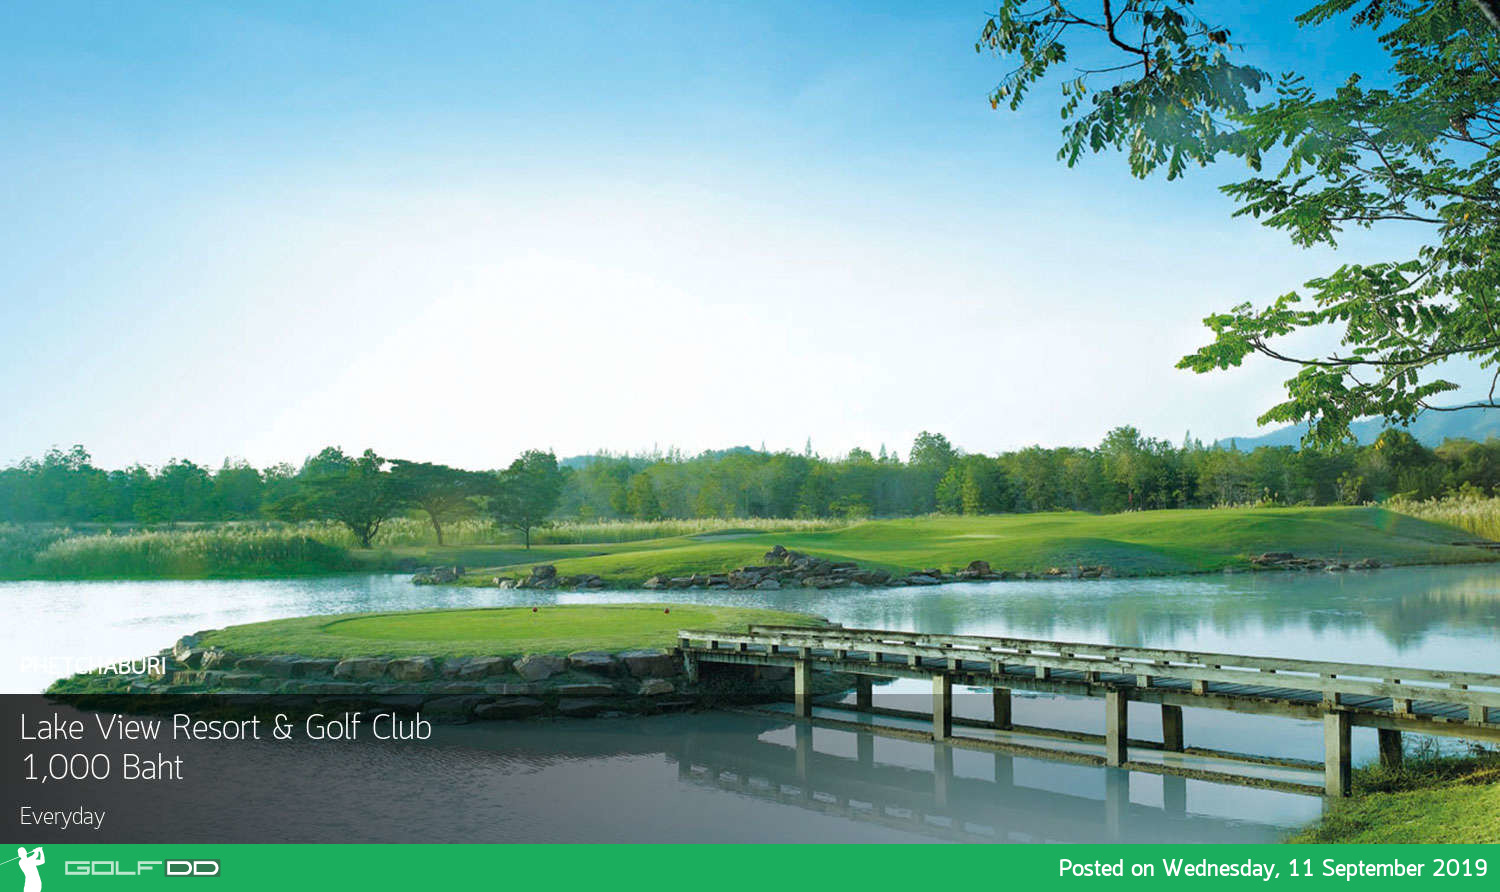 ลด 60% โปรจัดเต็ม ออกรอบแค่ 1,000 บาท ที่ Lake View Resort and Golf Club ชะอำ จองผ่าน Golfdd จ่ายหน้าสนามได้เลย 